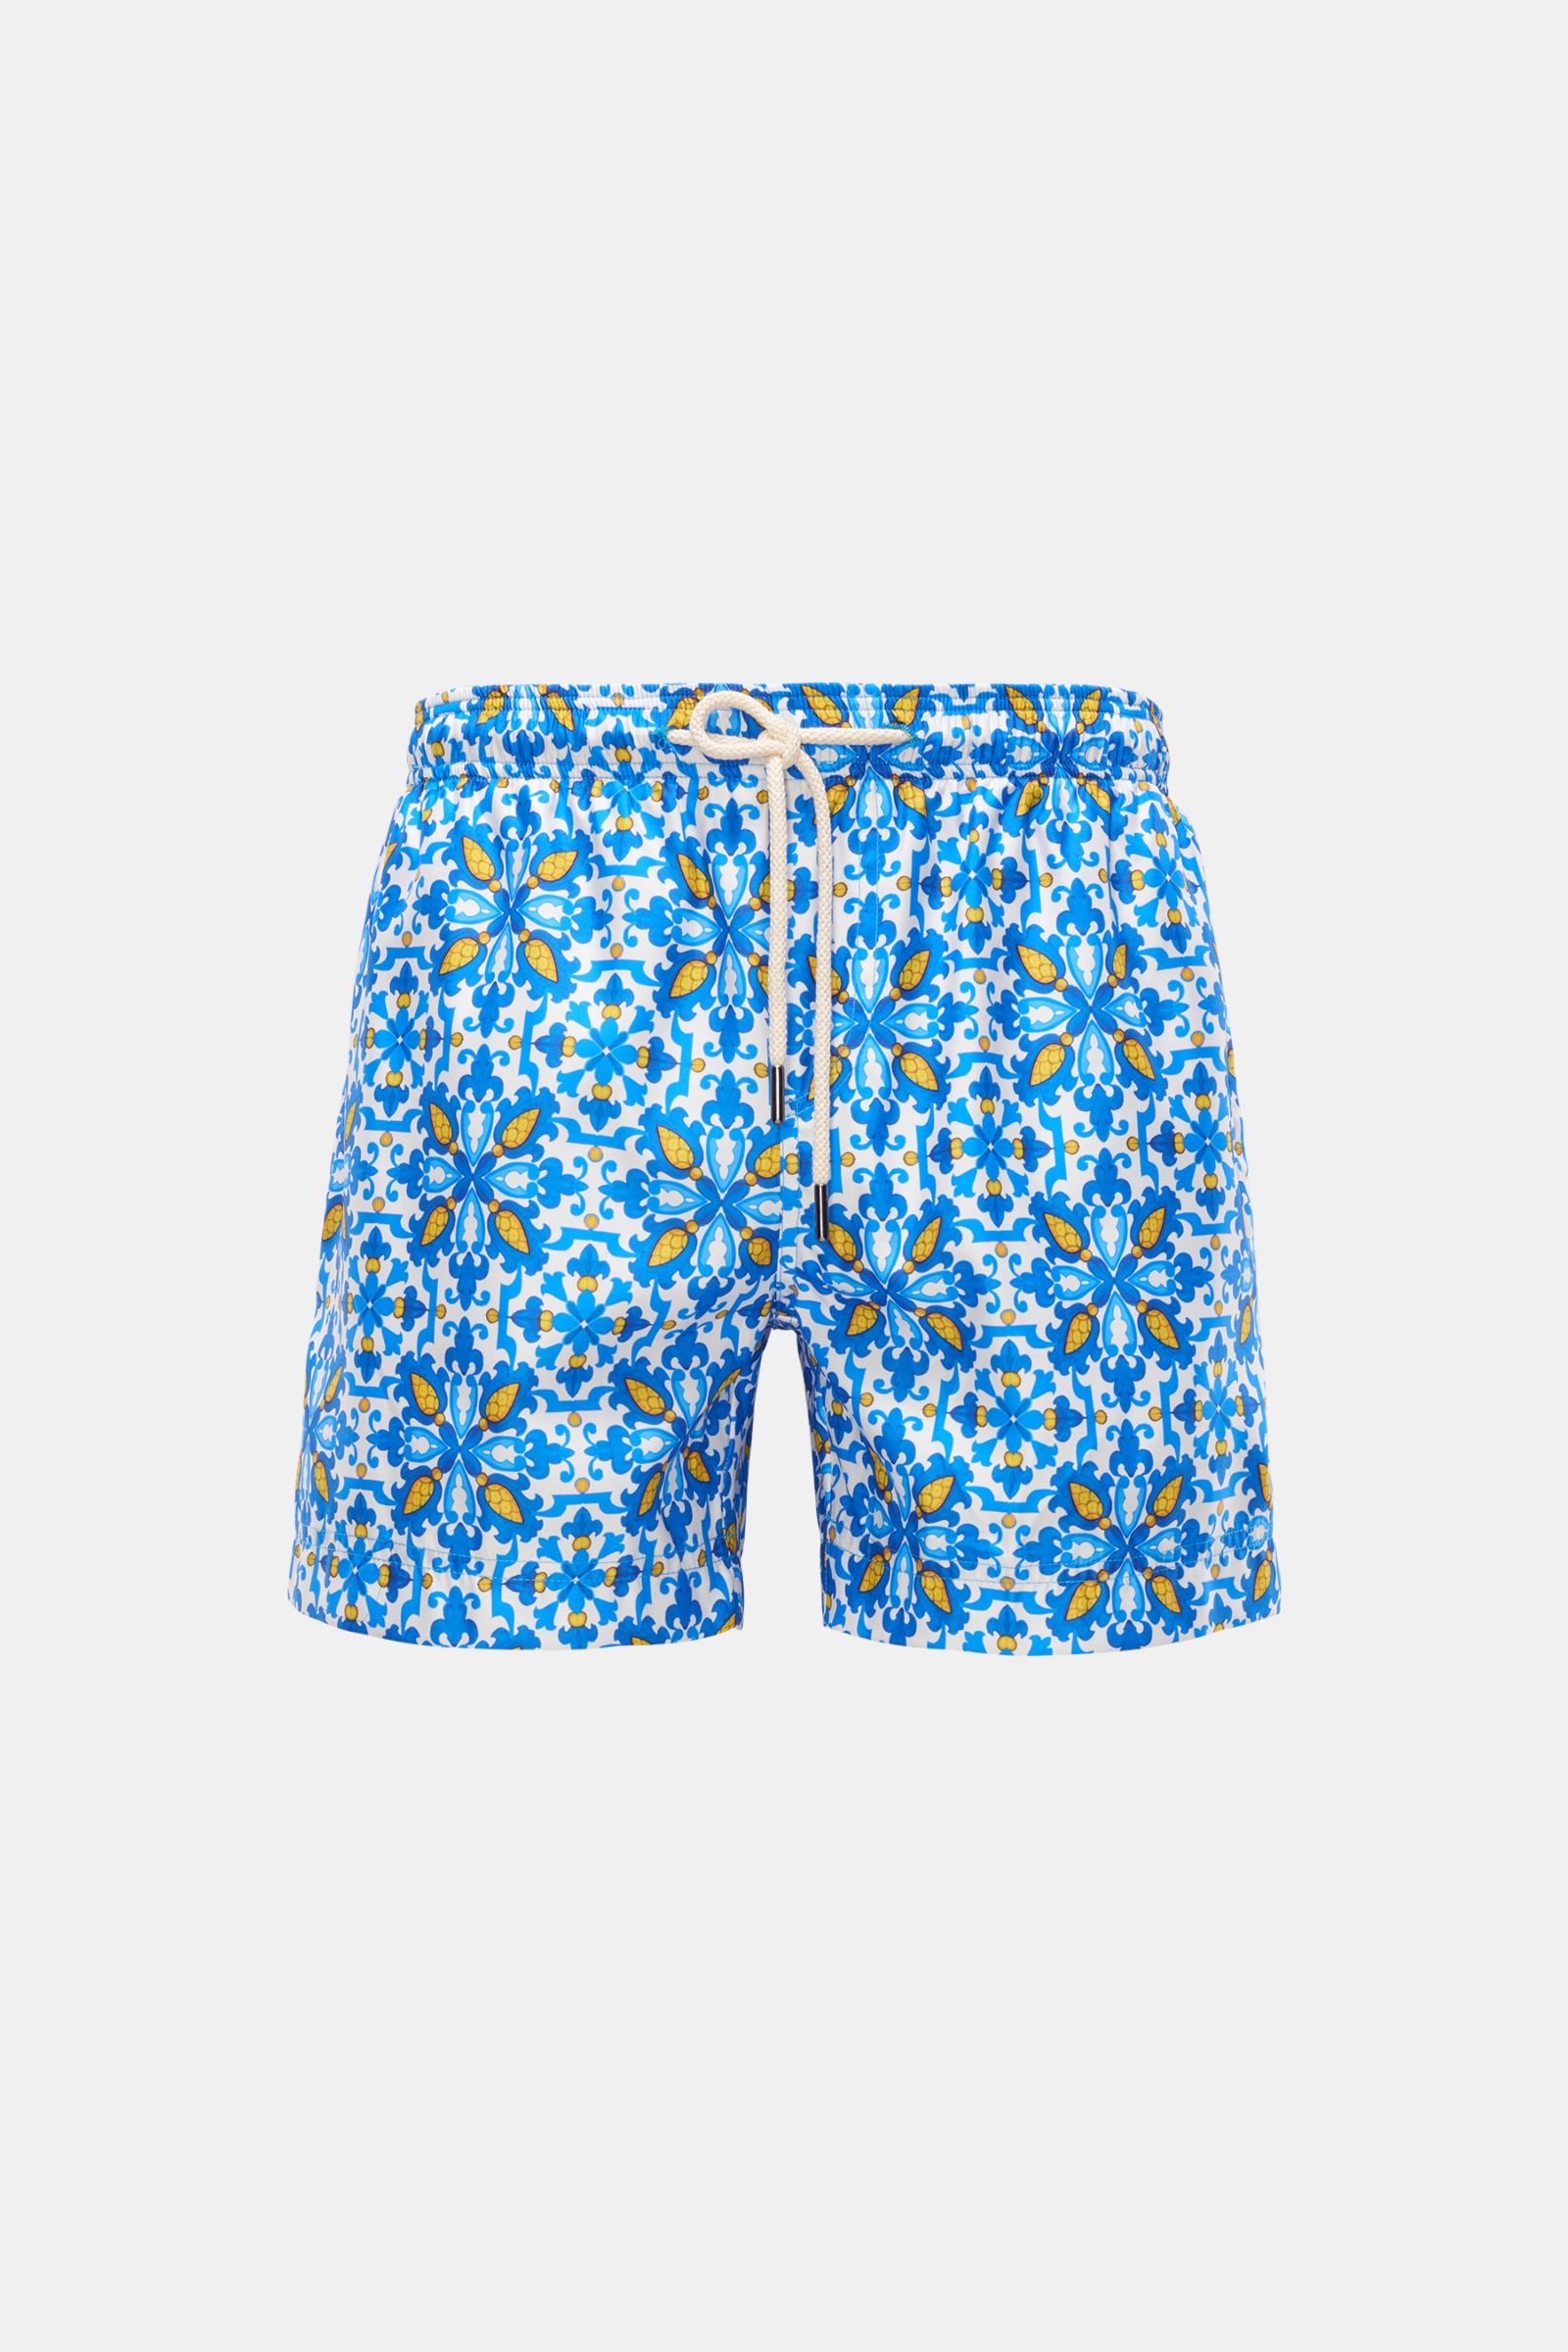 Swim shorts blue/yellow patterned 